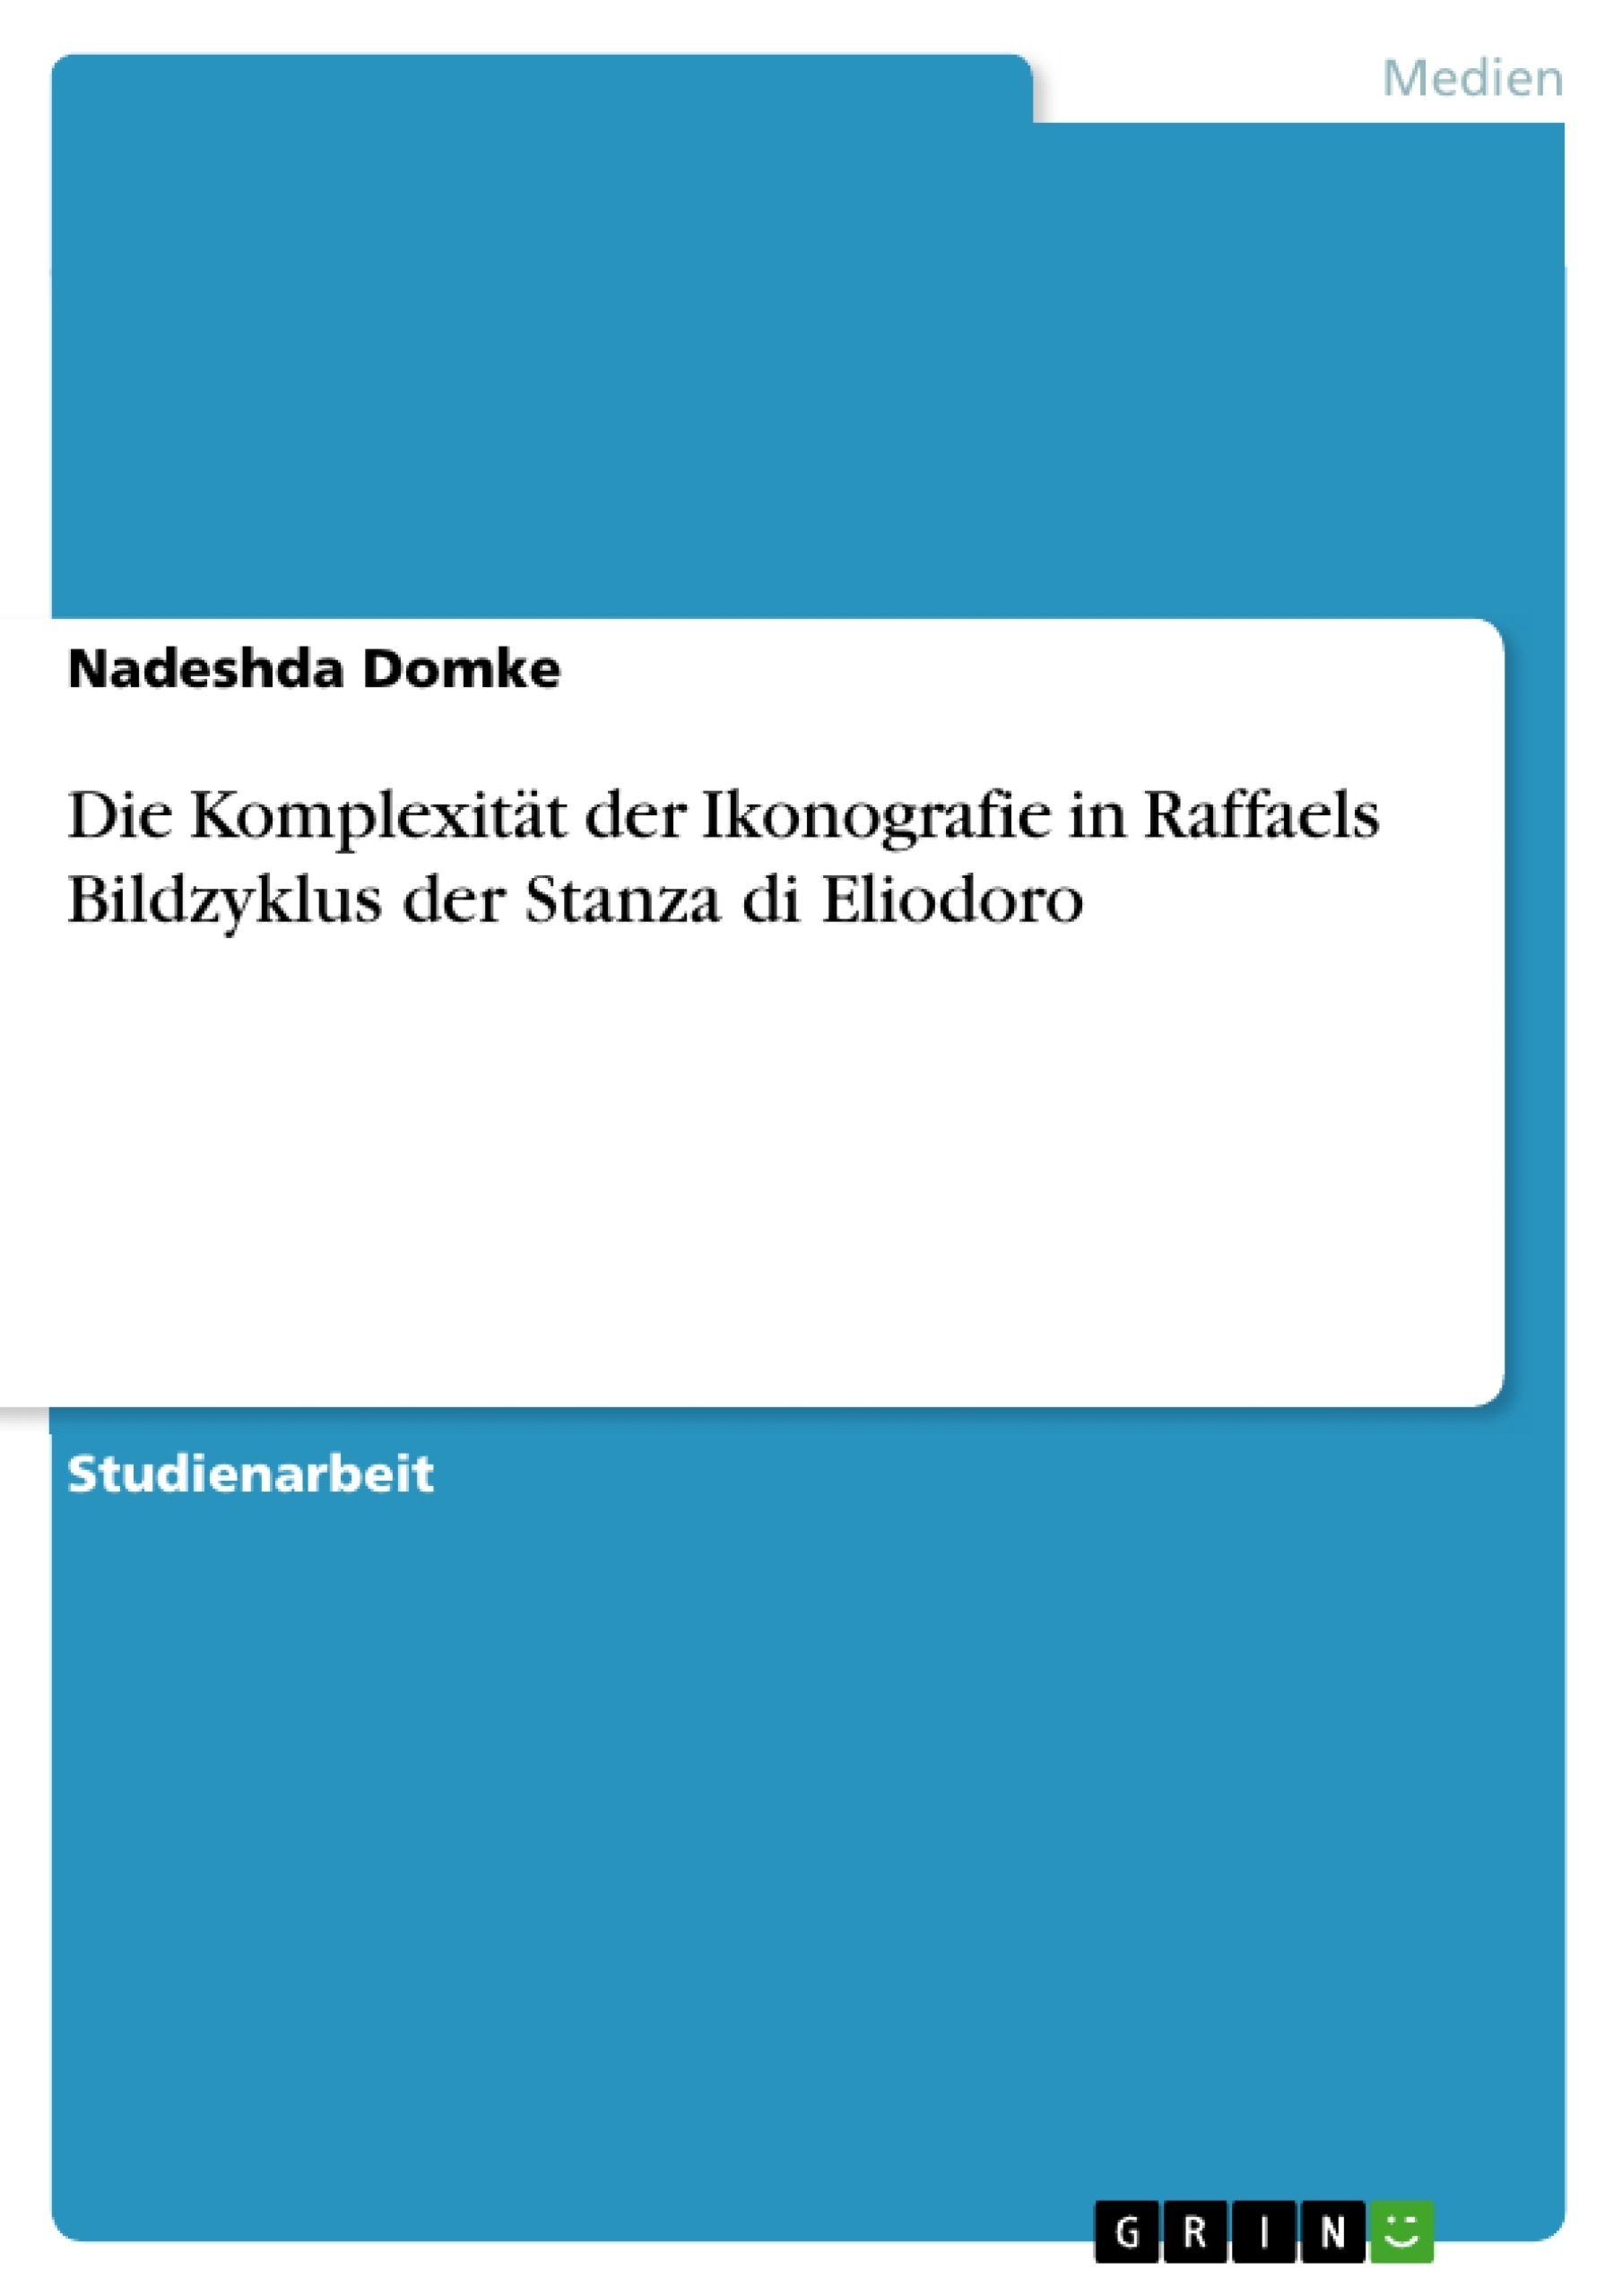 Title: Die Komplexität der Ikonografie in Raffaels Bildzyklus der Stanza di Eliodoro